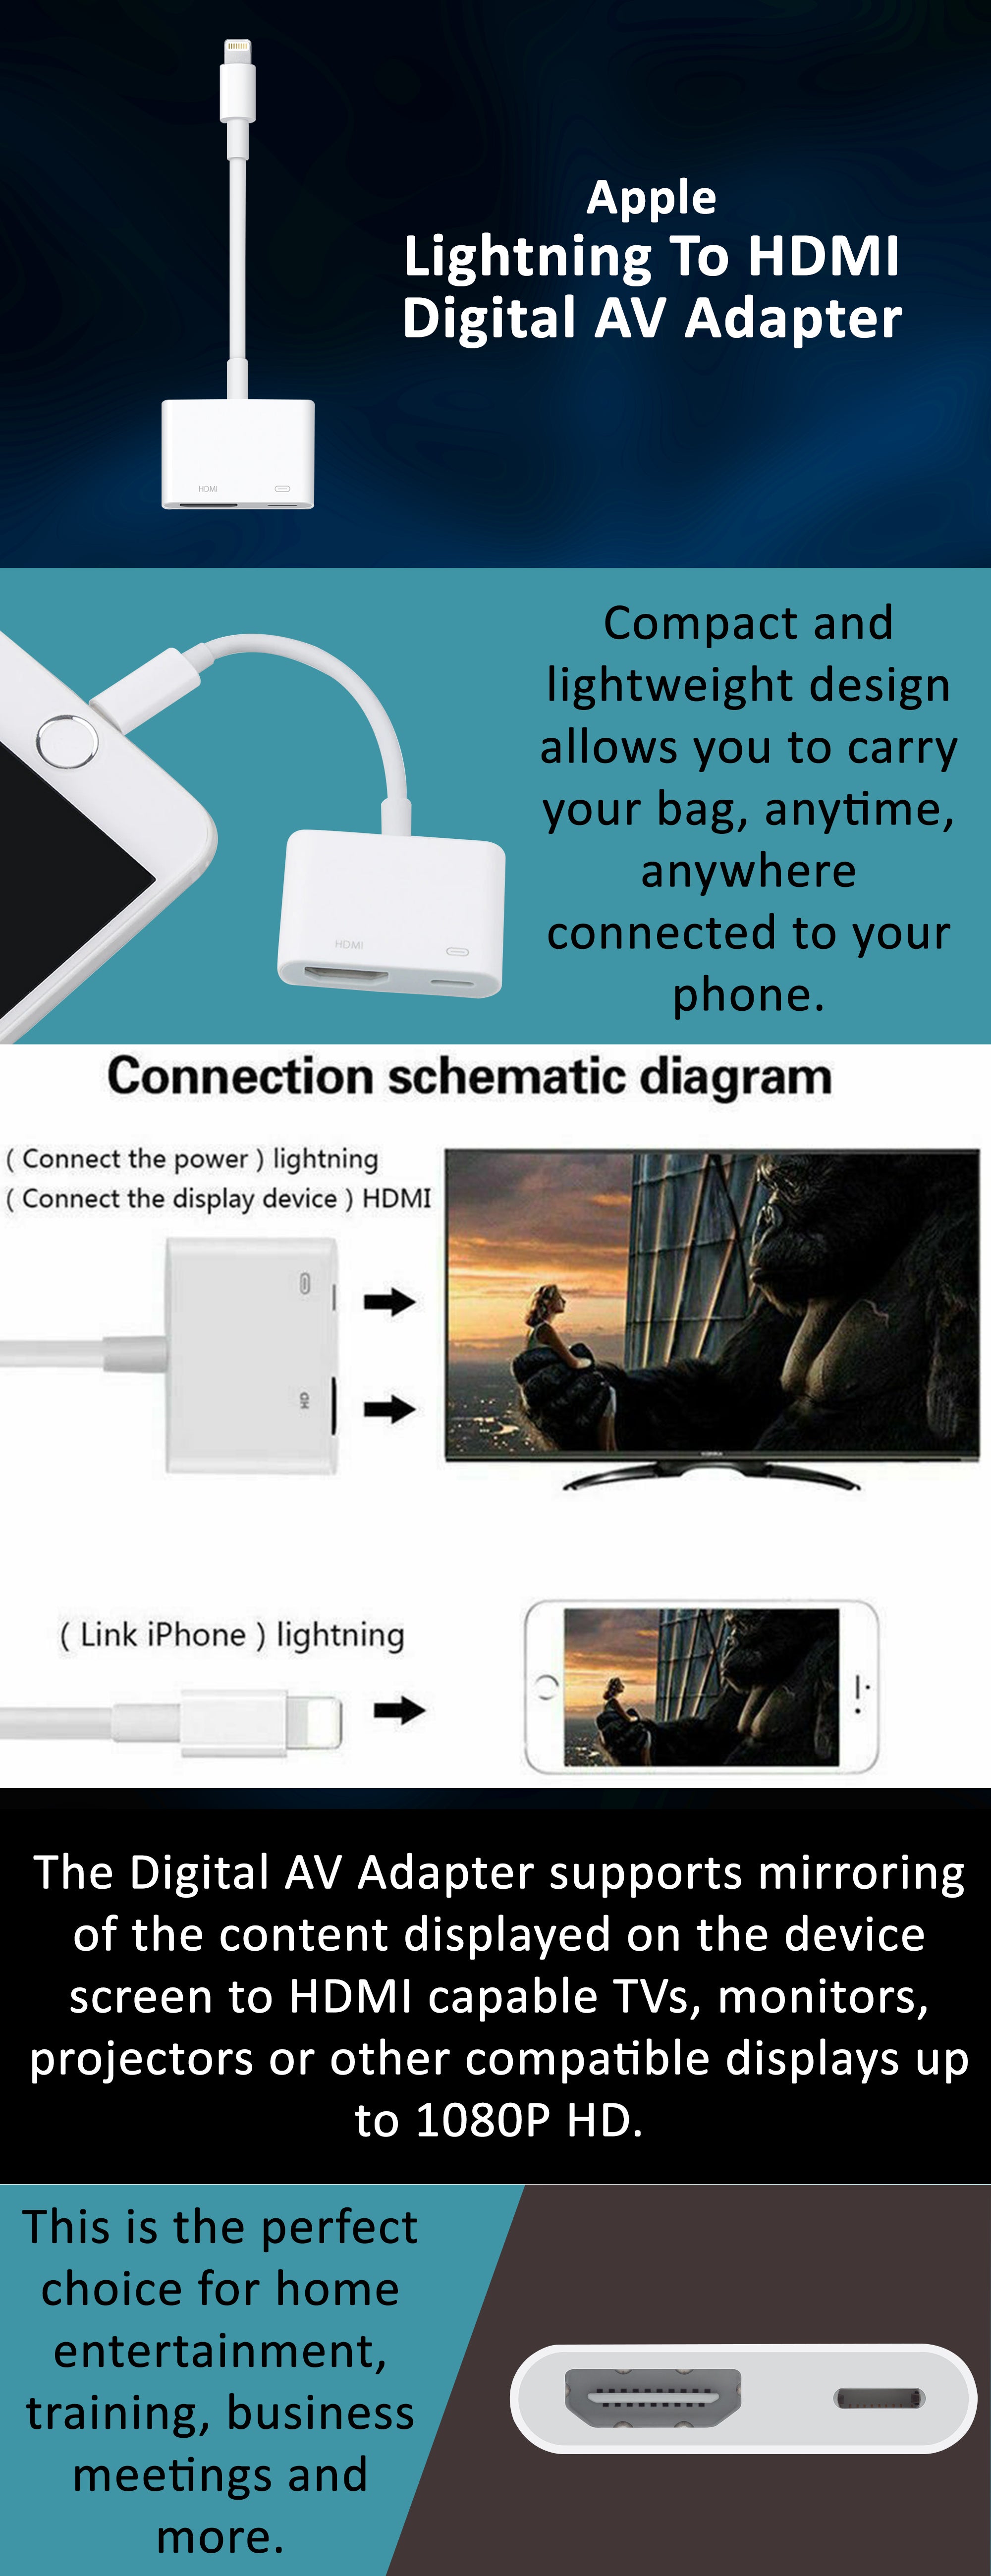 Apple MD826AM Lightning To HDMI Digital AV Adapter for iPhone Mirroring